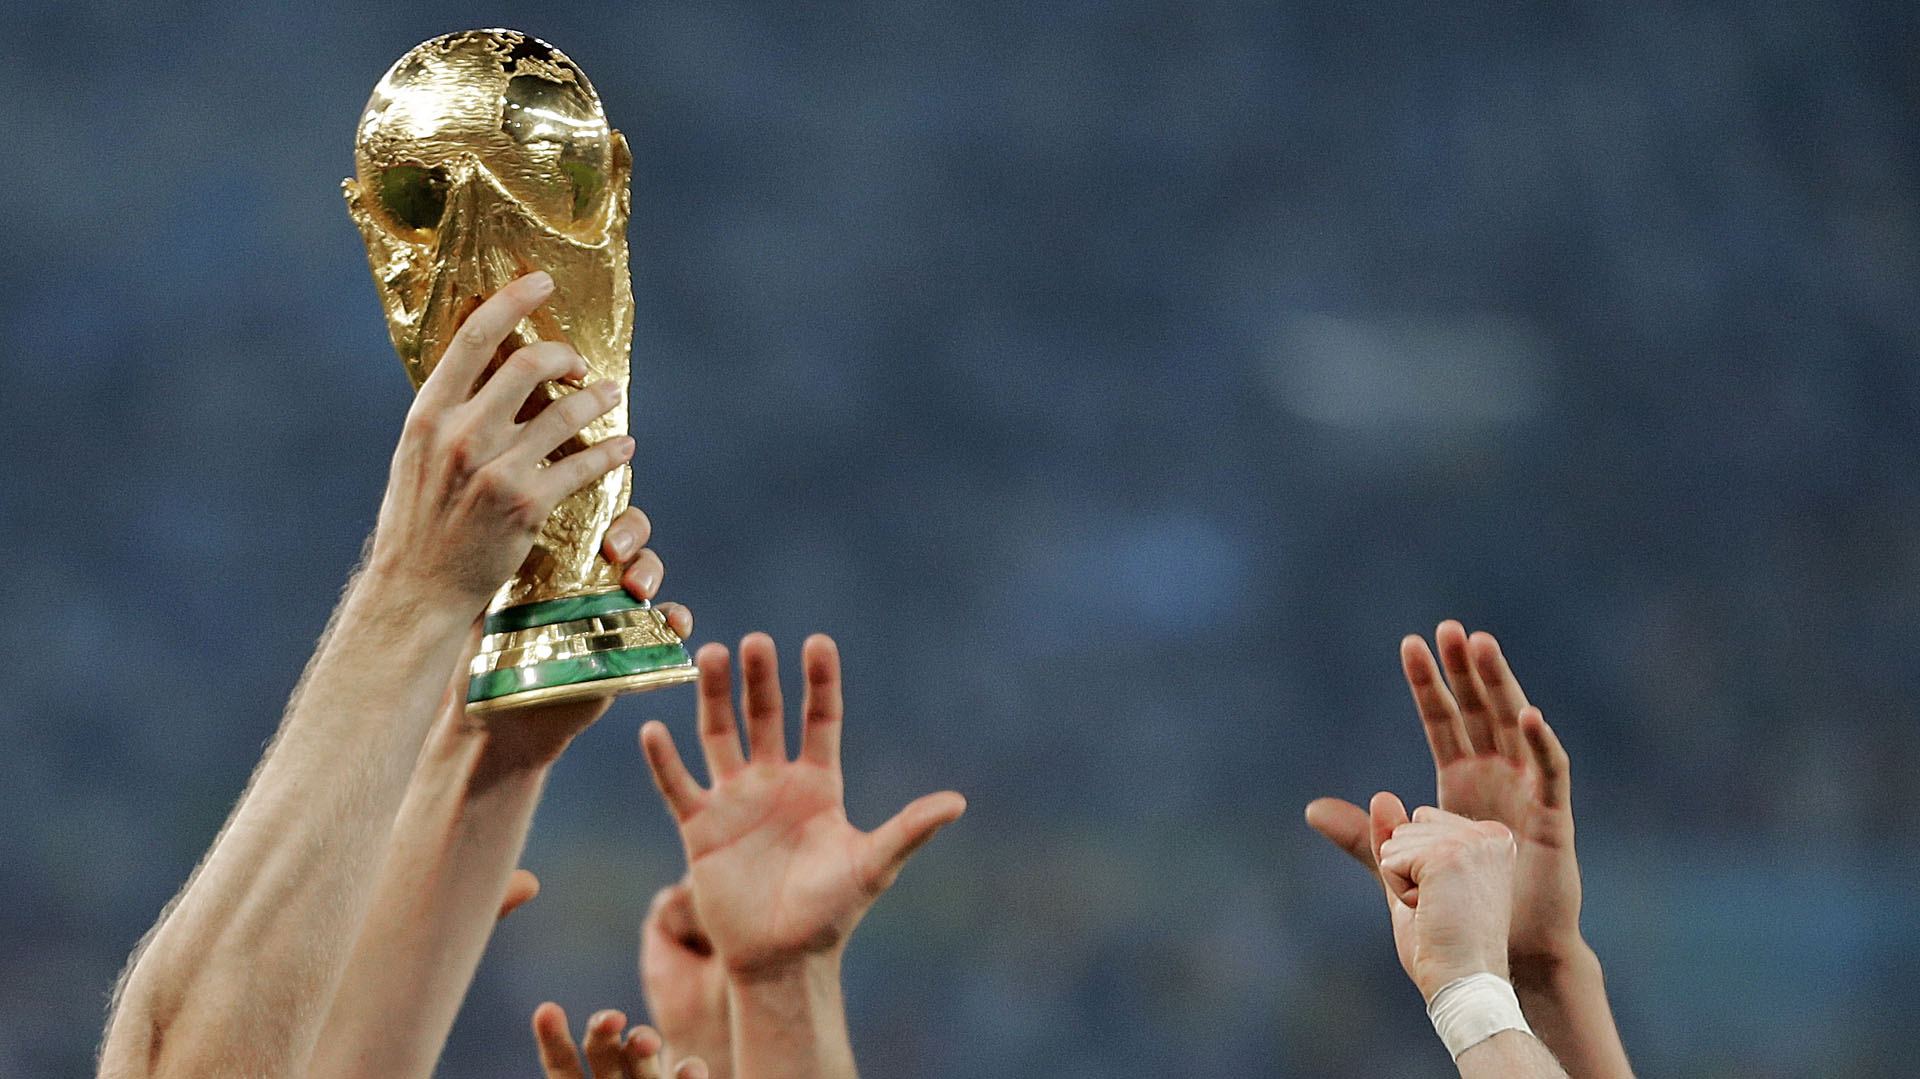 رابط توقعات من سيربح كاس العالم 2022 ؟